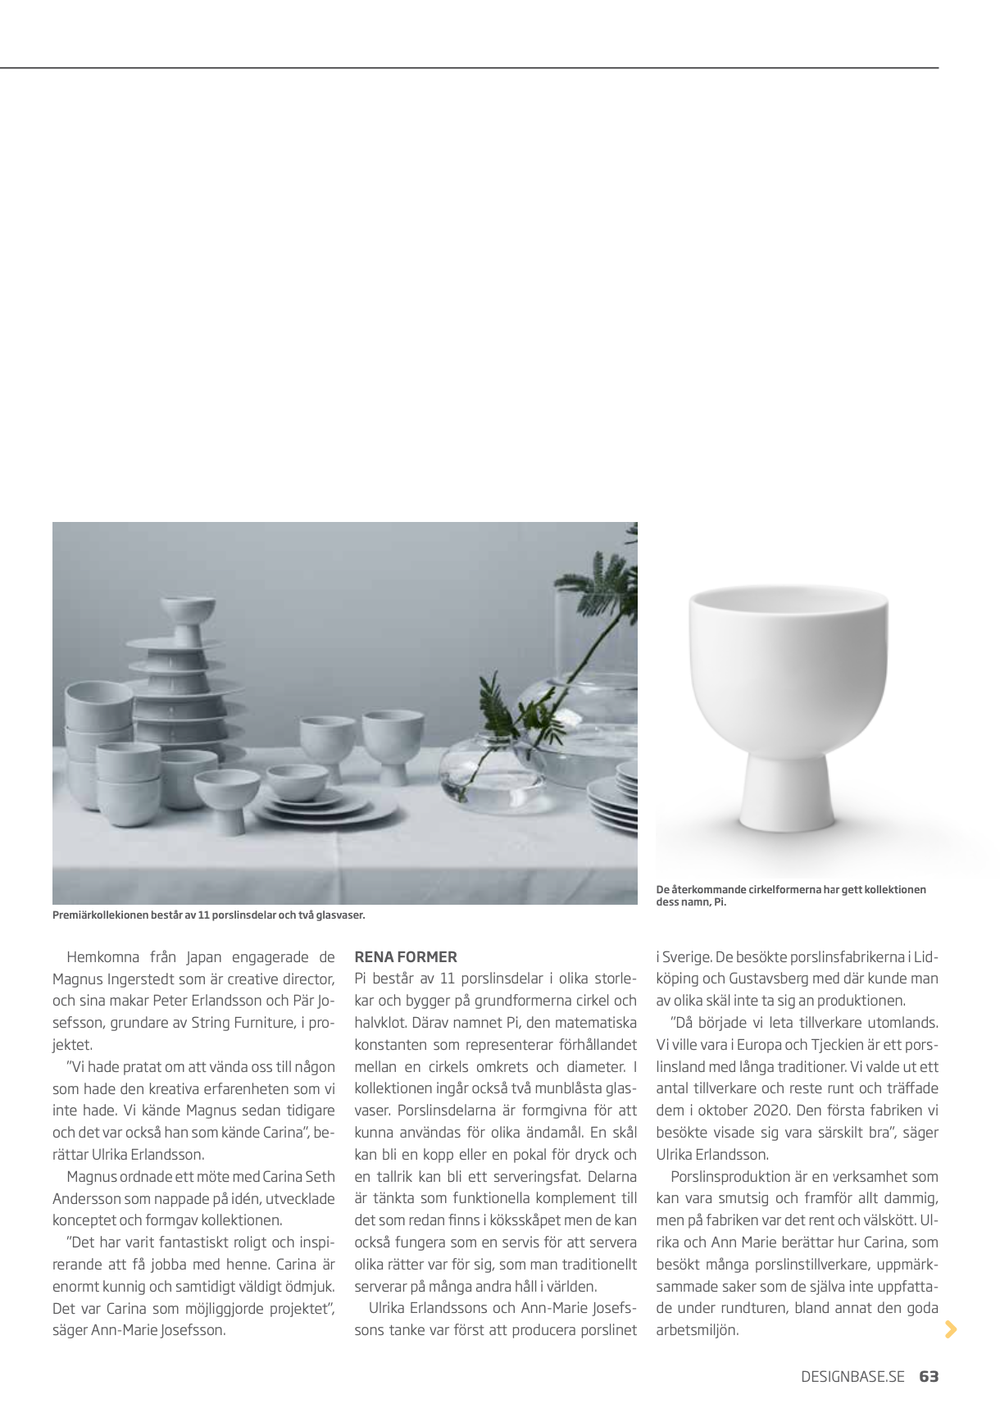 Sida från tidskriften Designbase